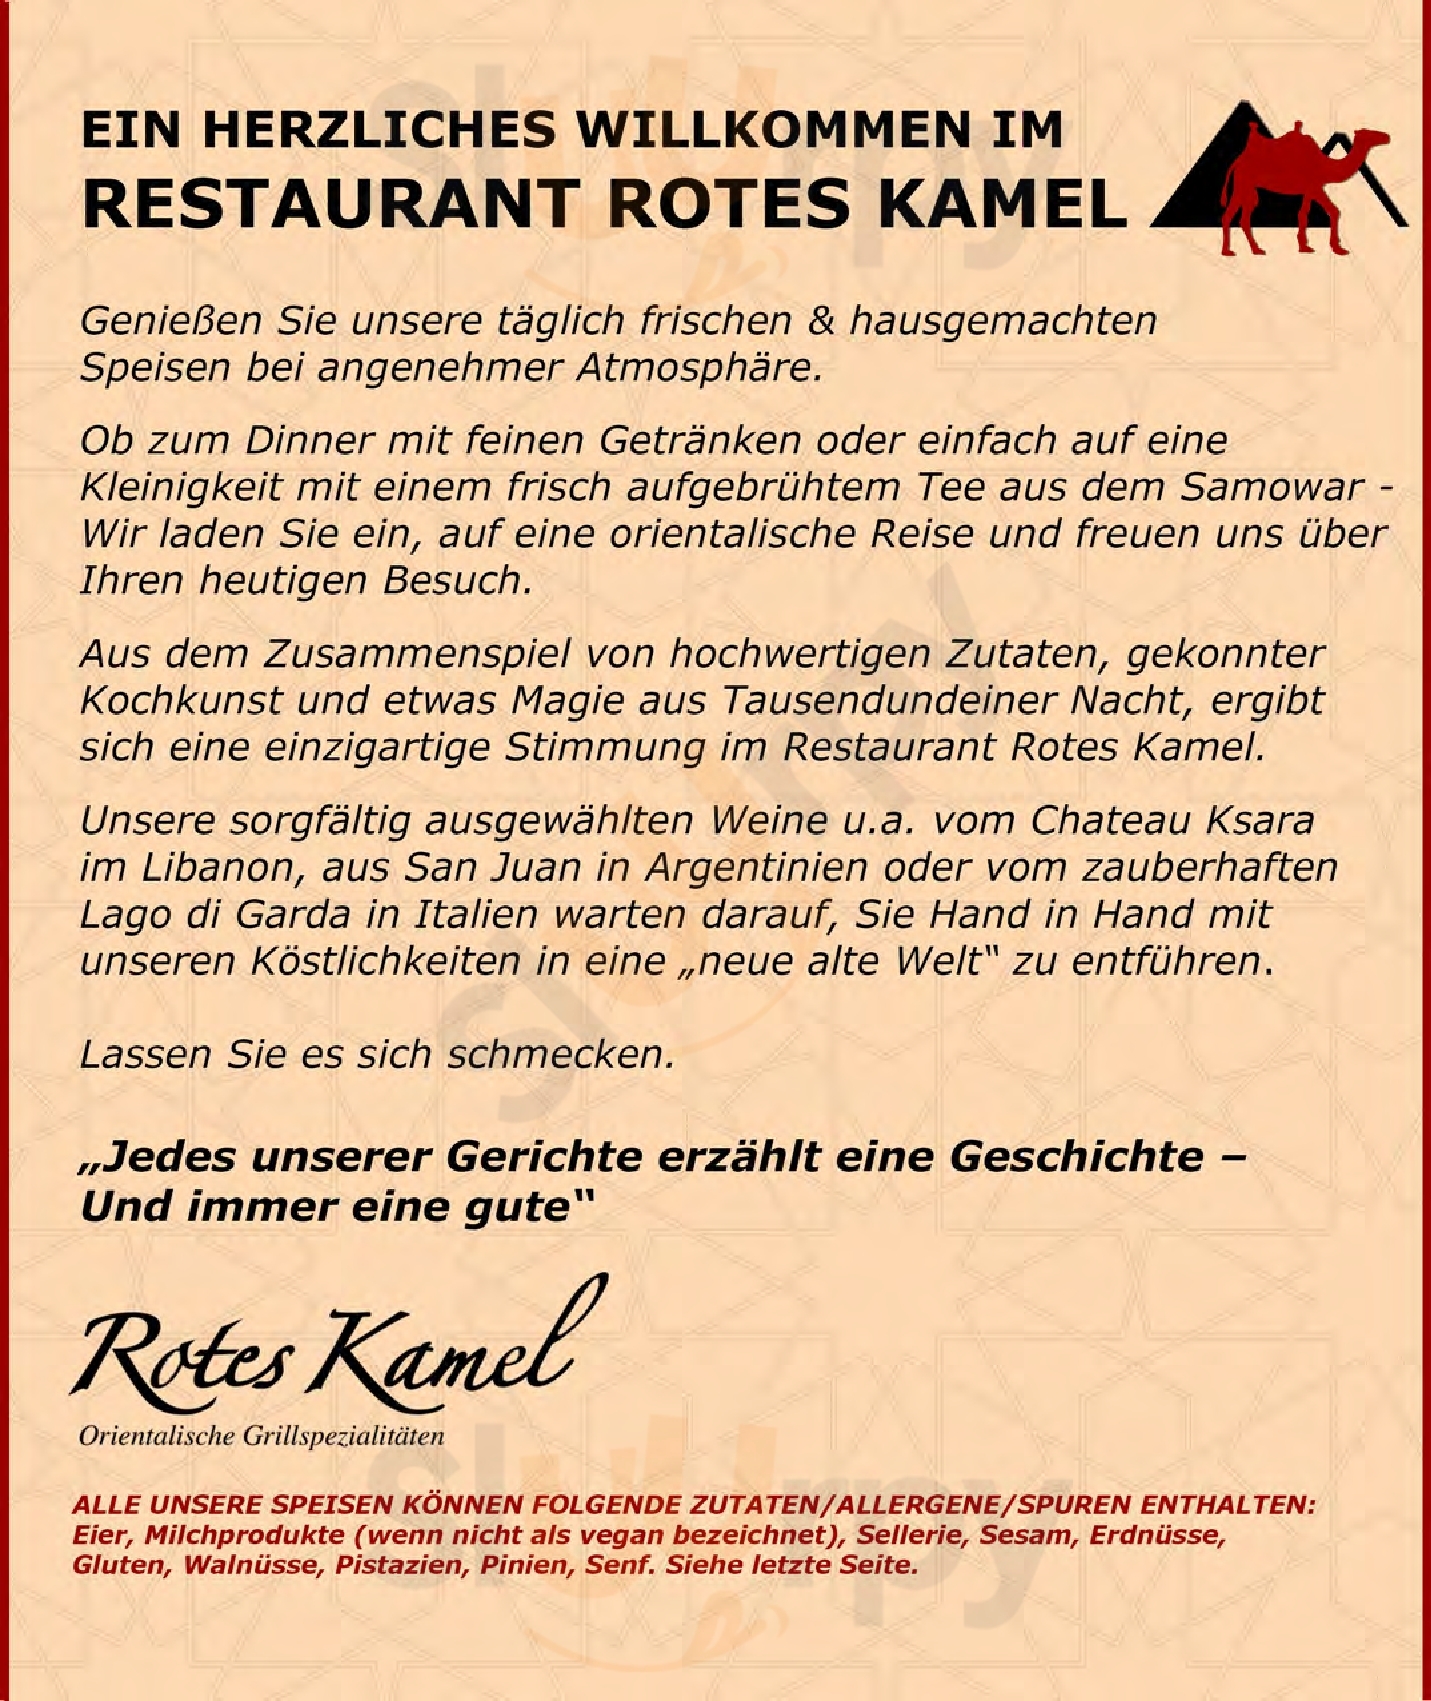 Rotes Kamel Berlin Menu - 1